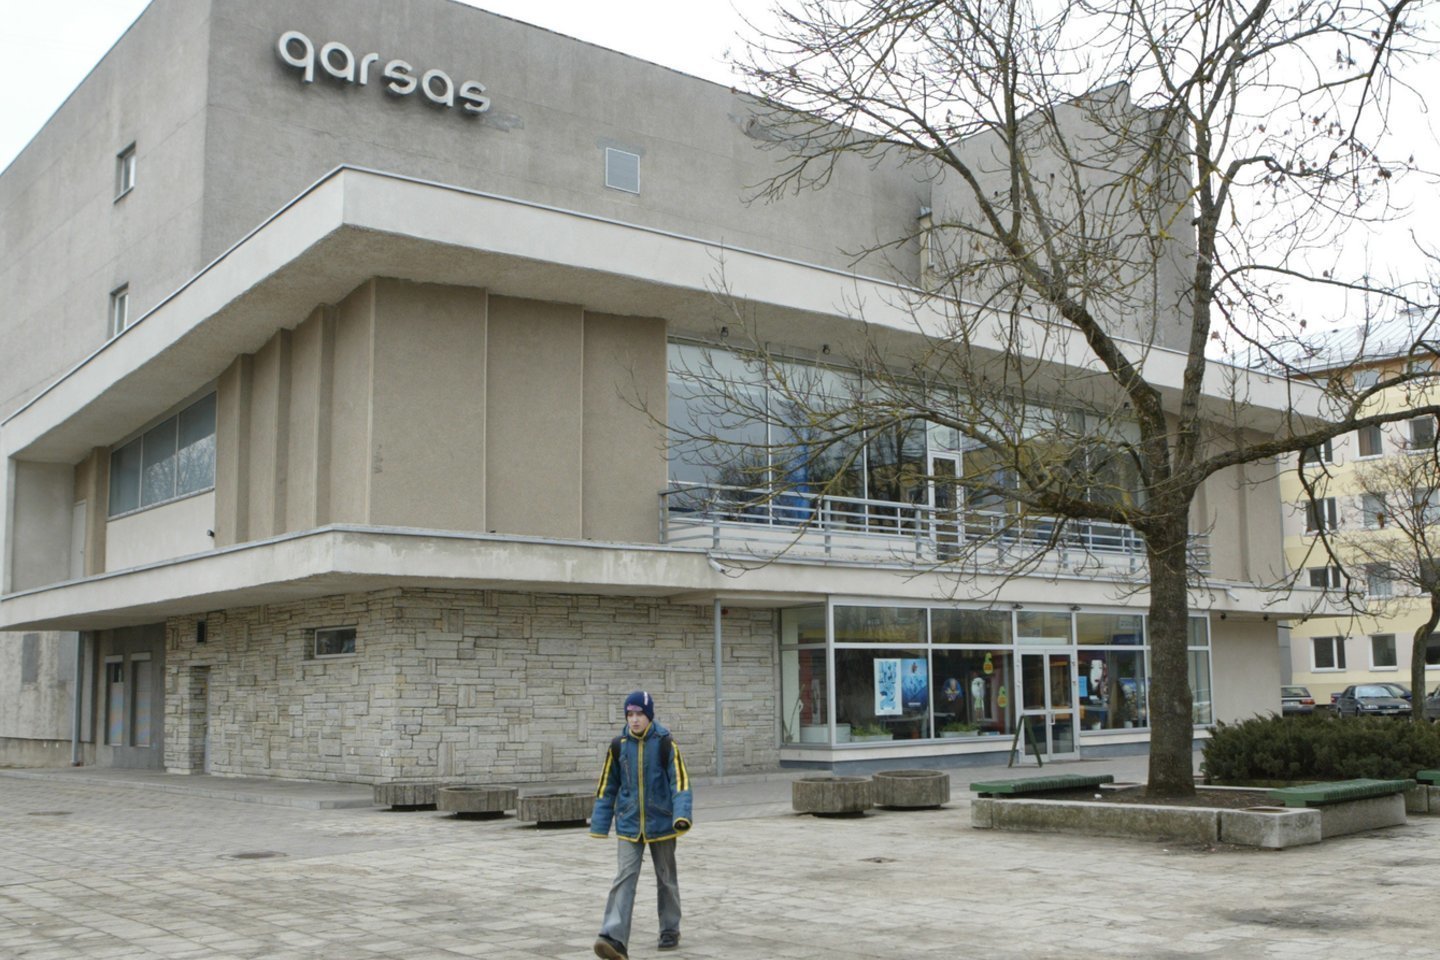 Senasis Panevėžio kino teatras „Garsas“ bus nugriautas. <br> T.Stasevičiaus nuotr.